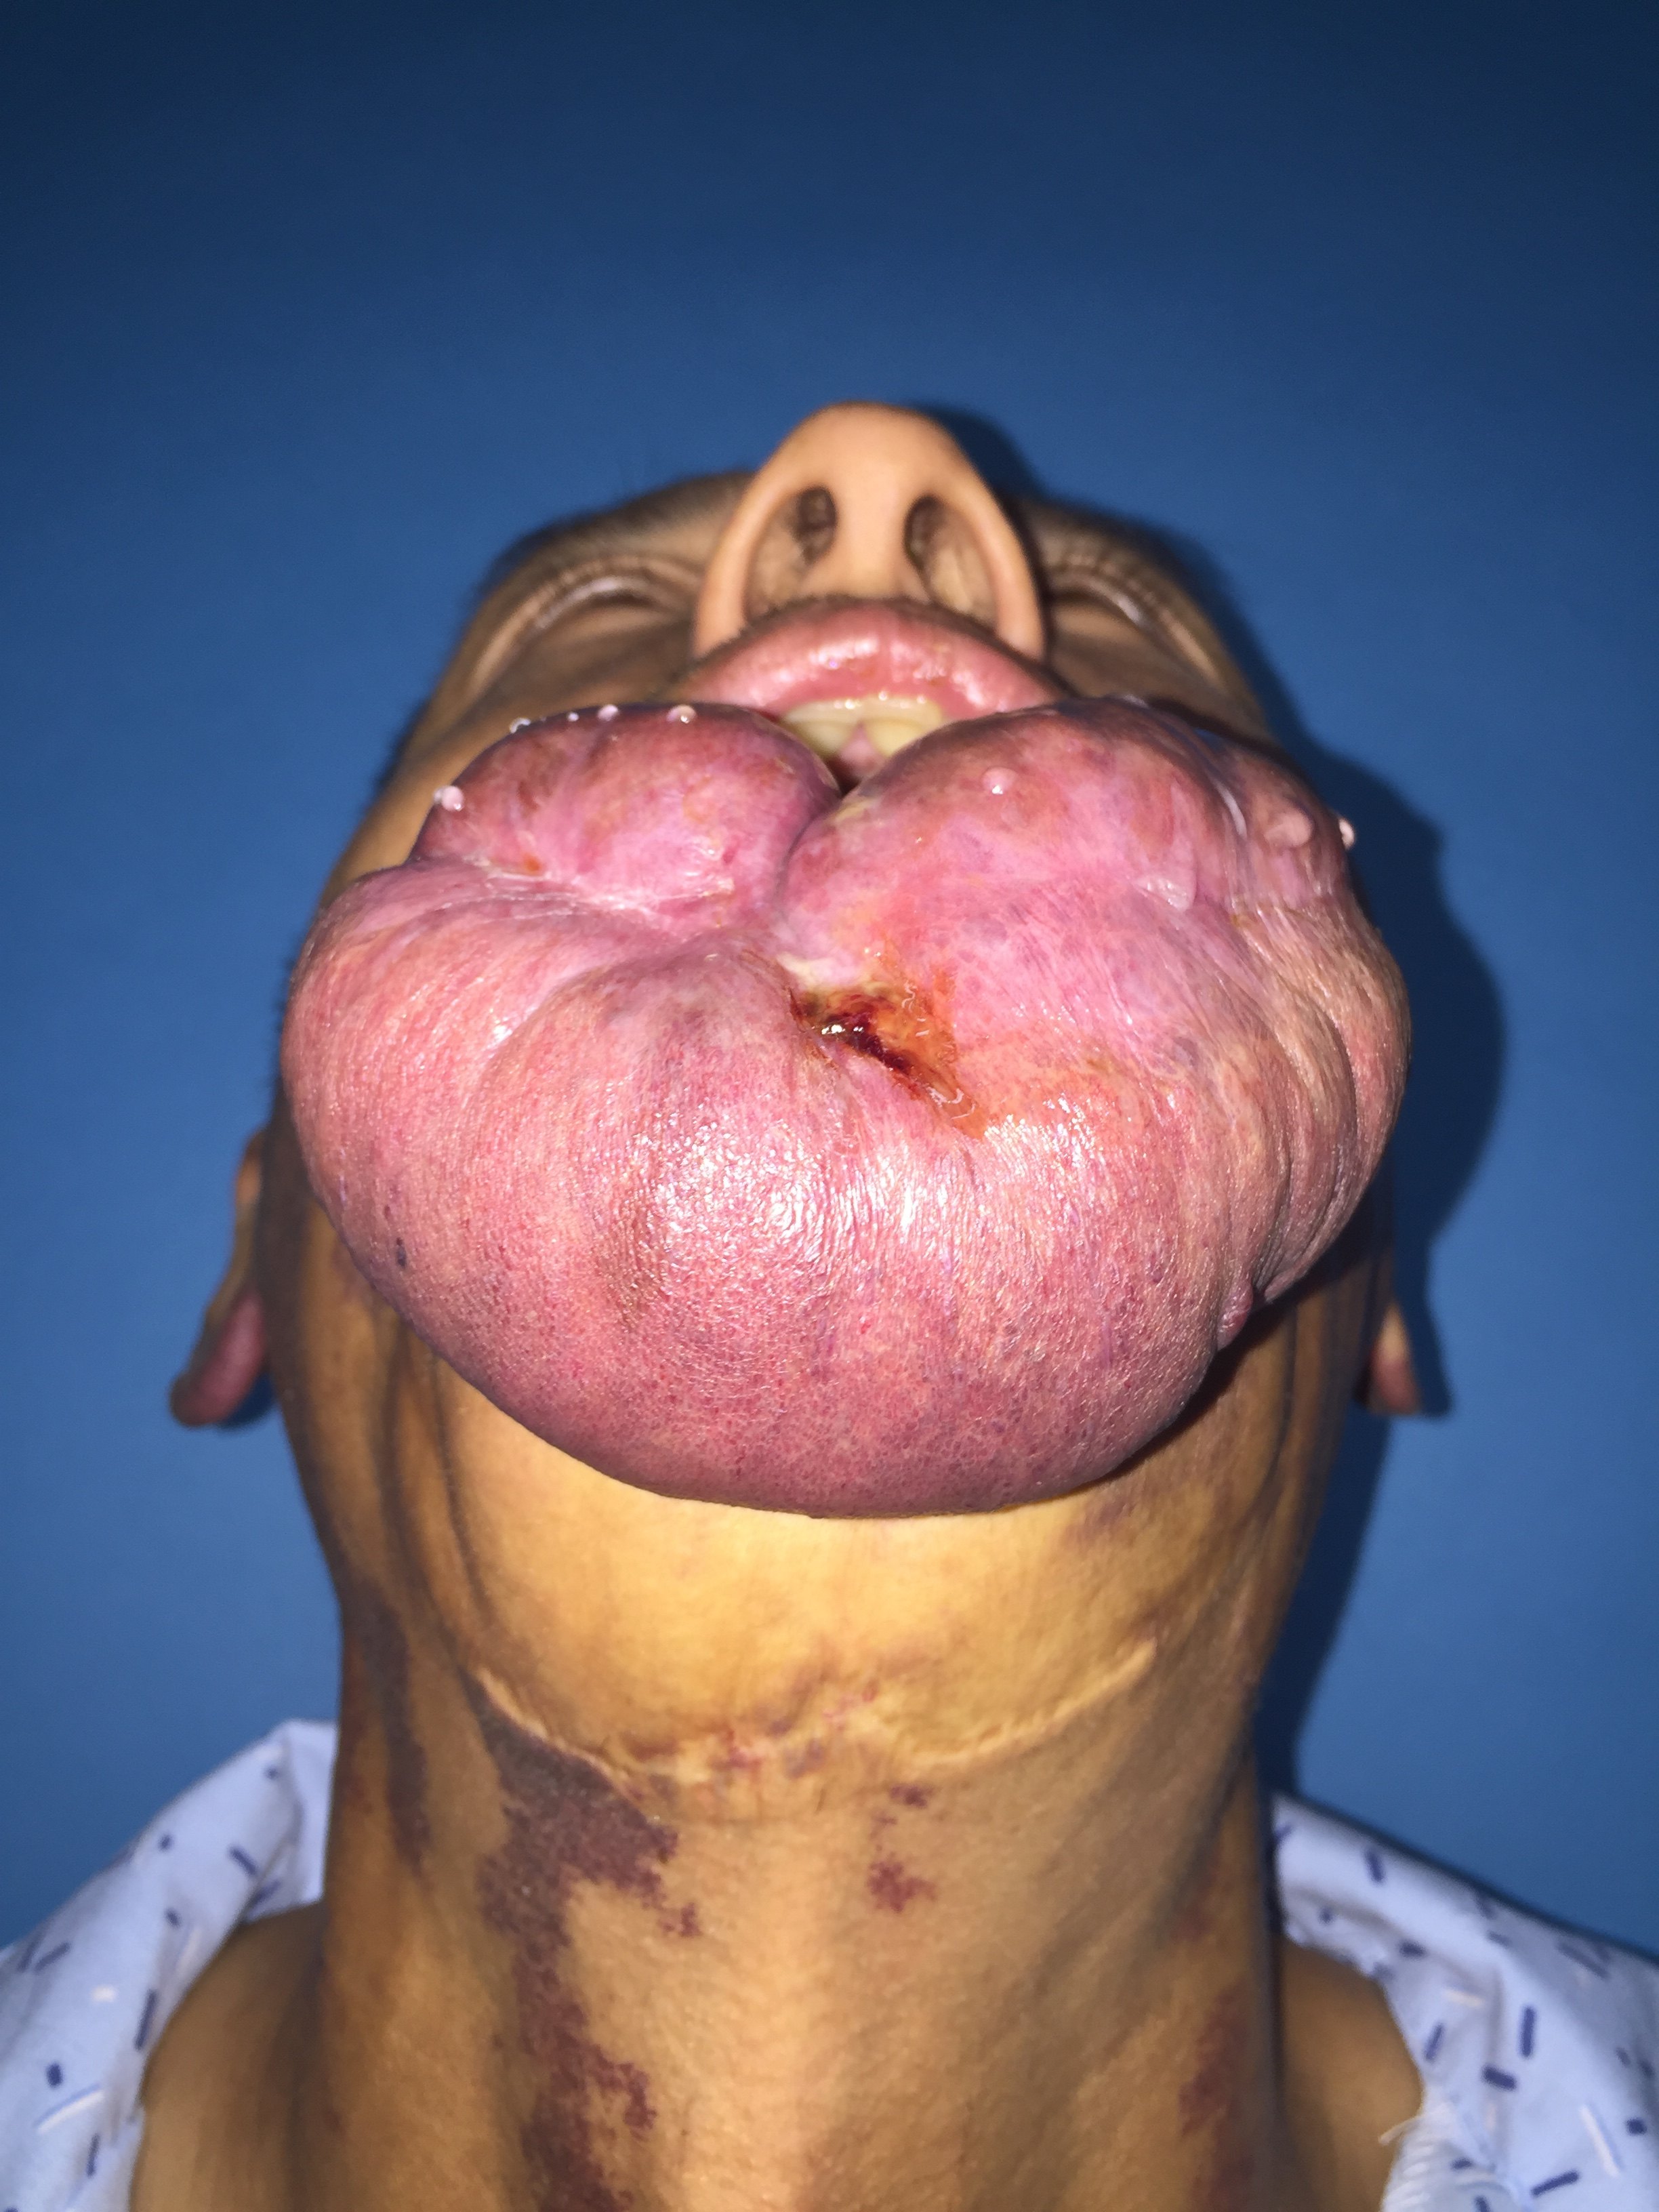 嘴唇血管畸形图片